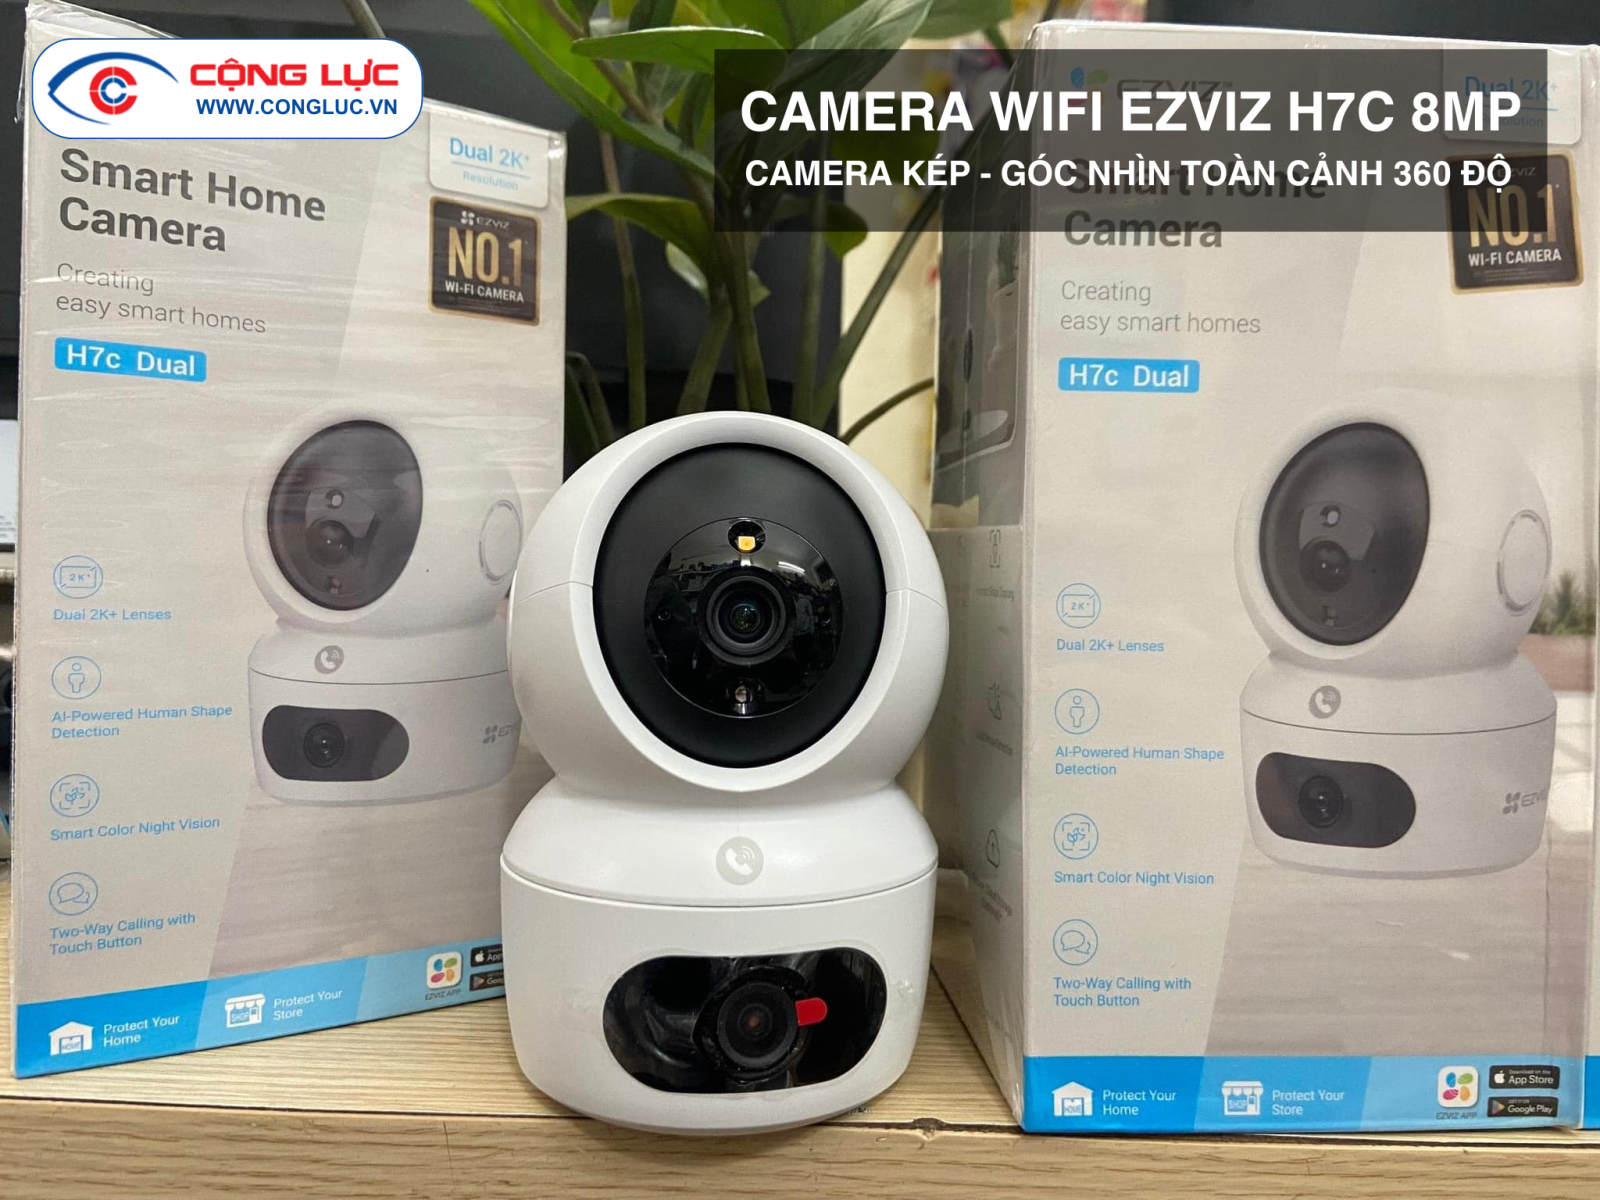 Lắp đặt camera wifi Ezviz H7C 8mp chính hãng giá rẻ tại Hải Phòng 